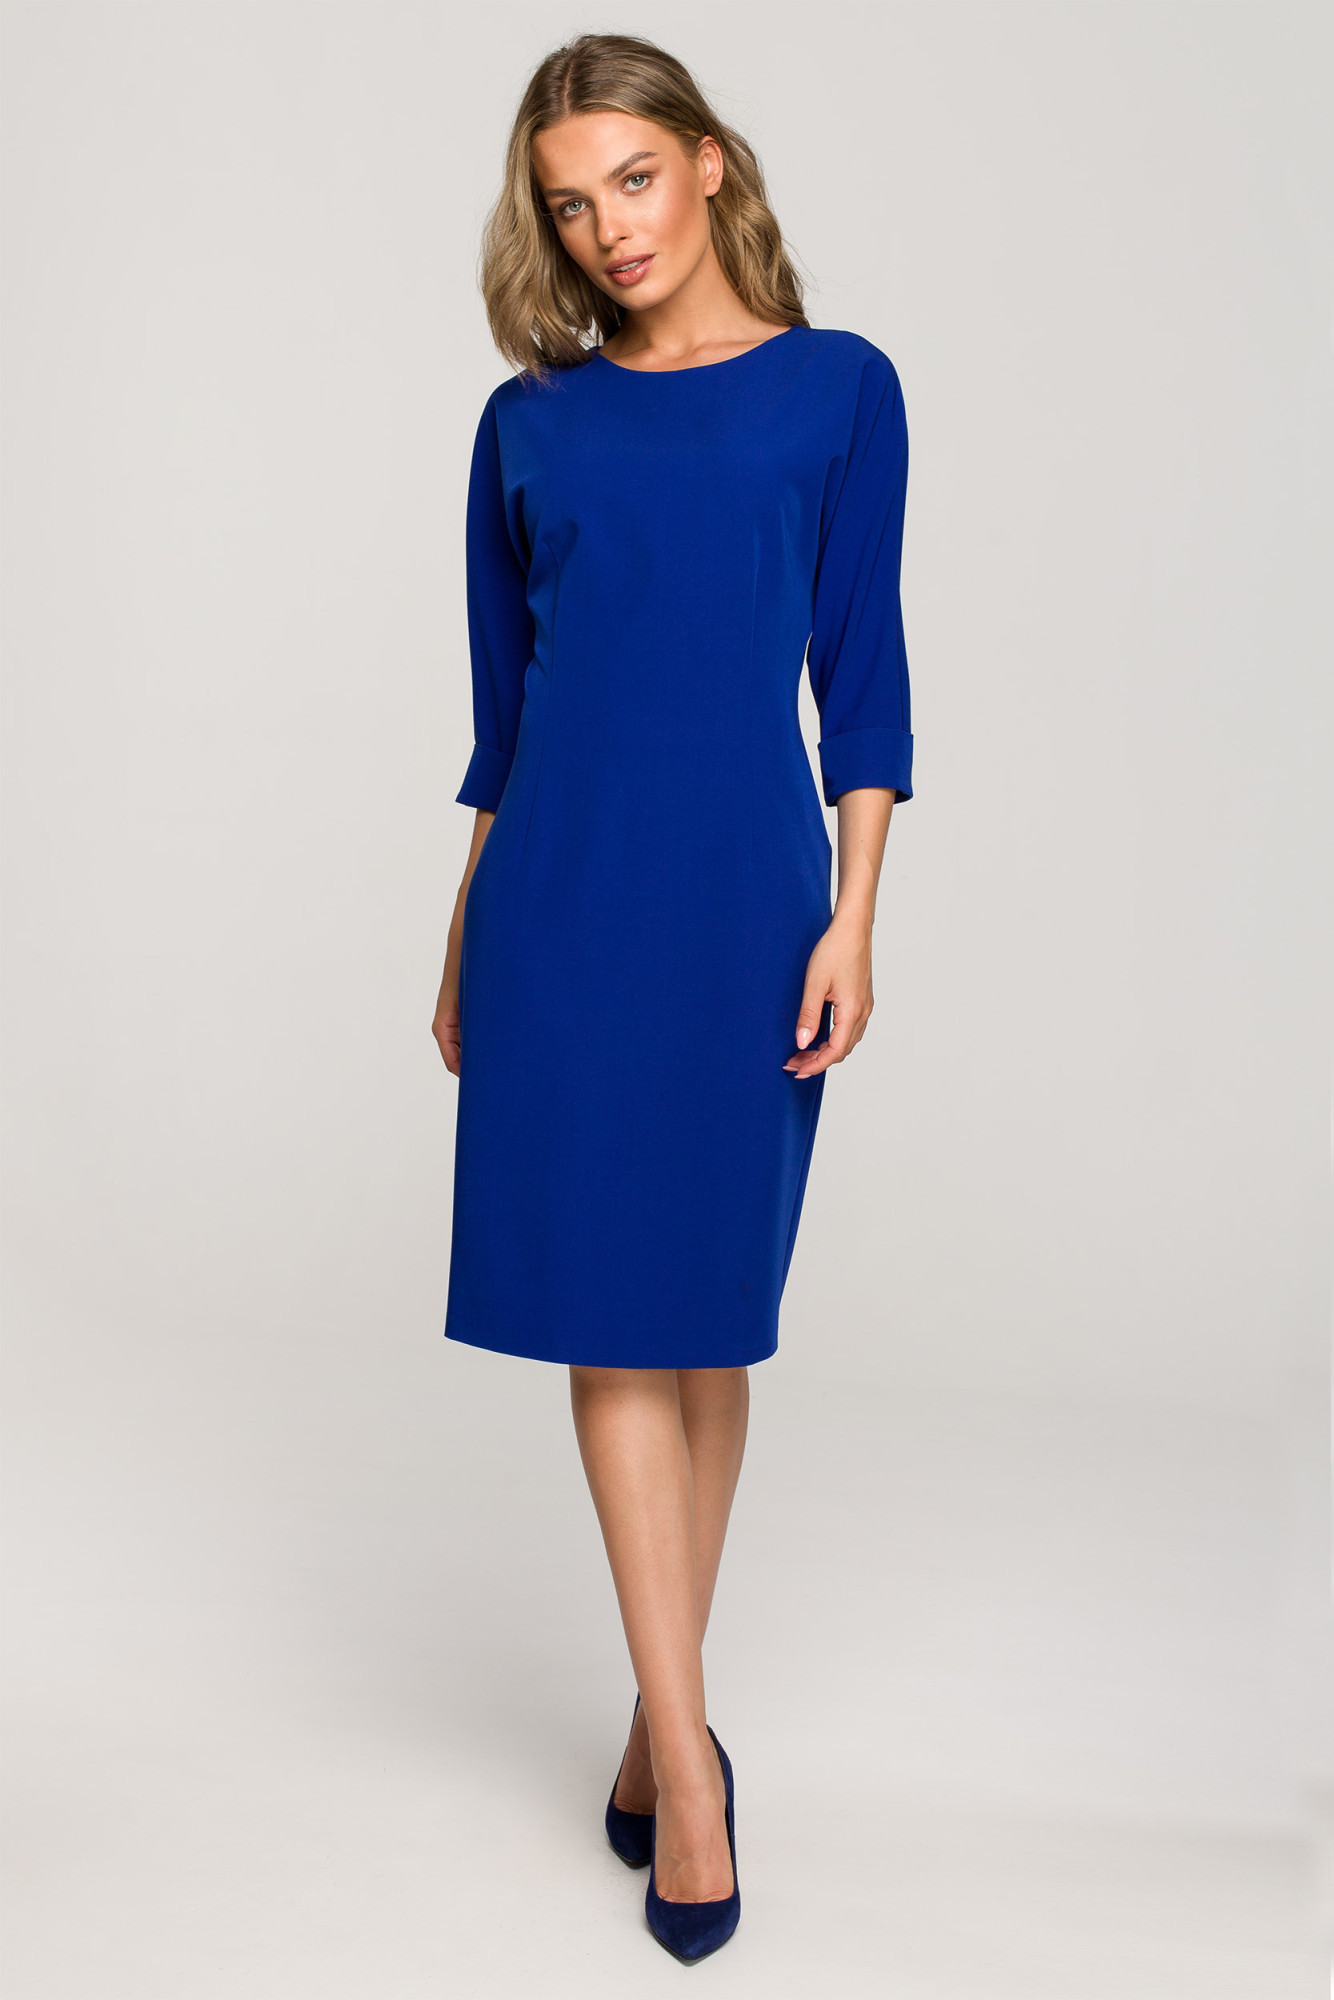 Dámské šaty S324 královská modrá - Stylové M